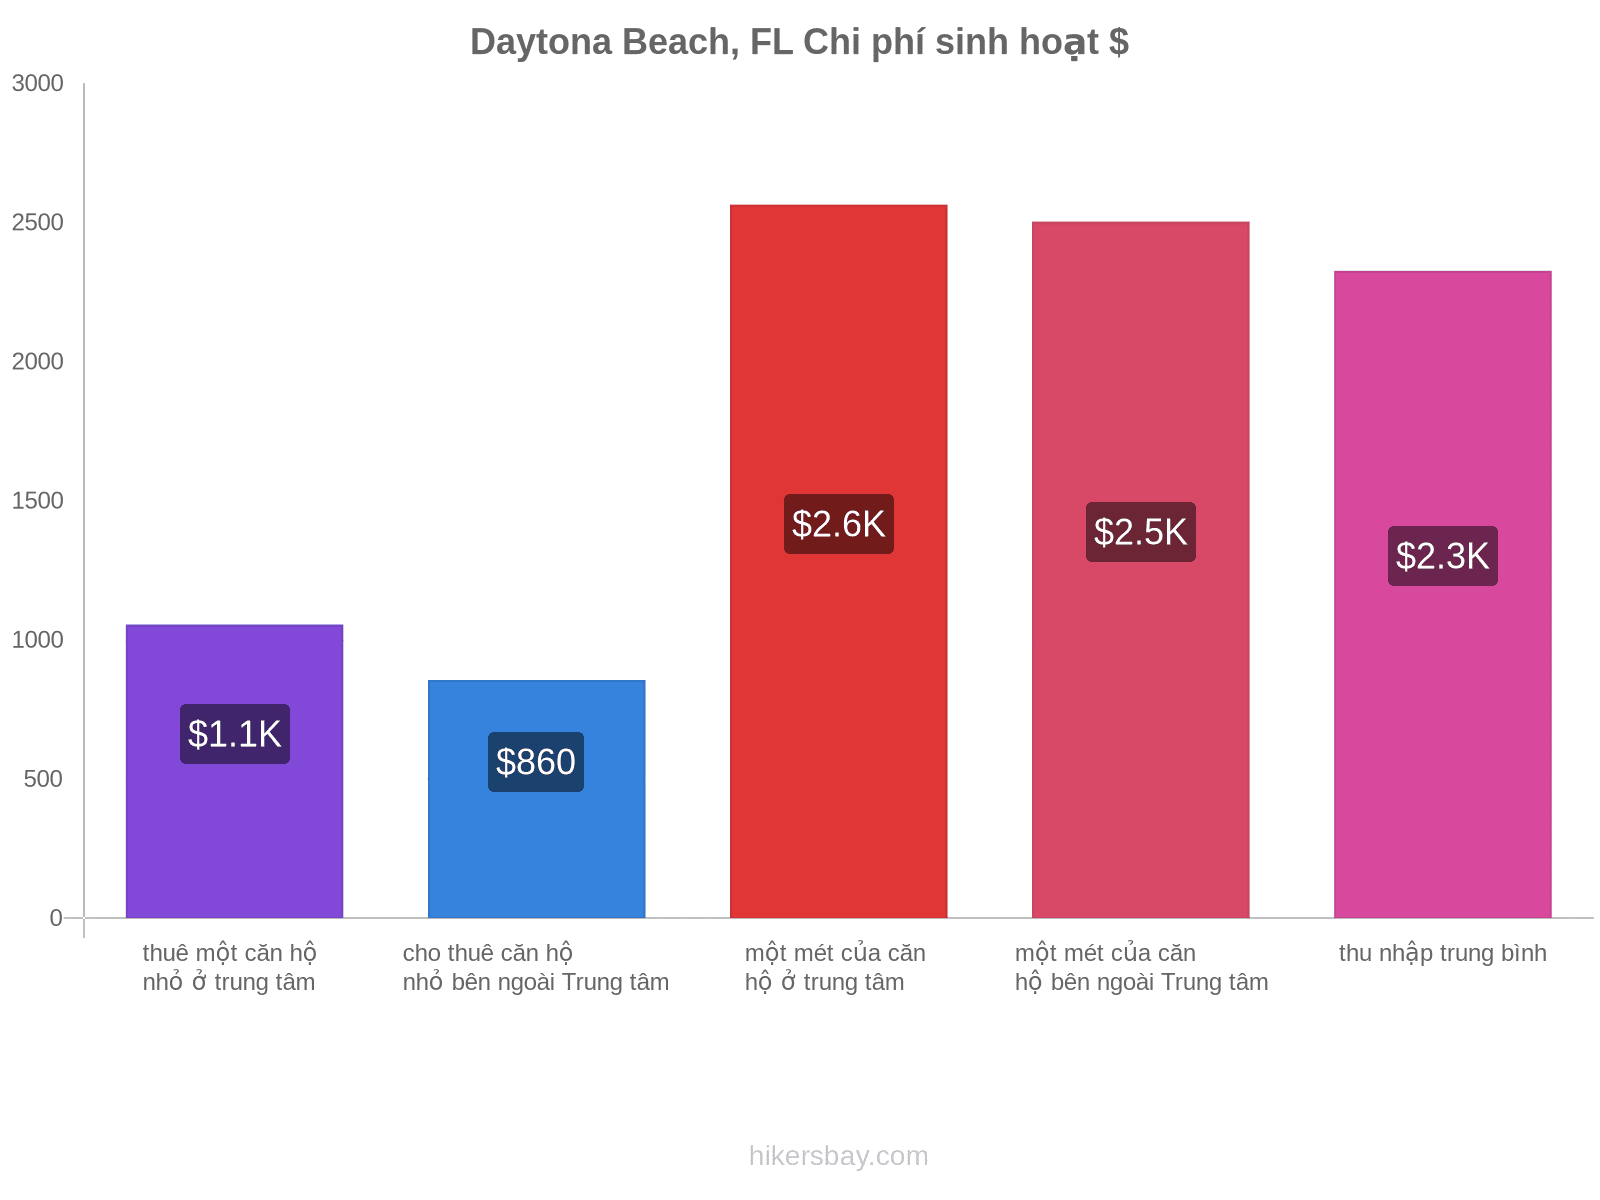 Daytona Beach, FL chi phí sinh hoạt hikersbay.com